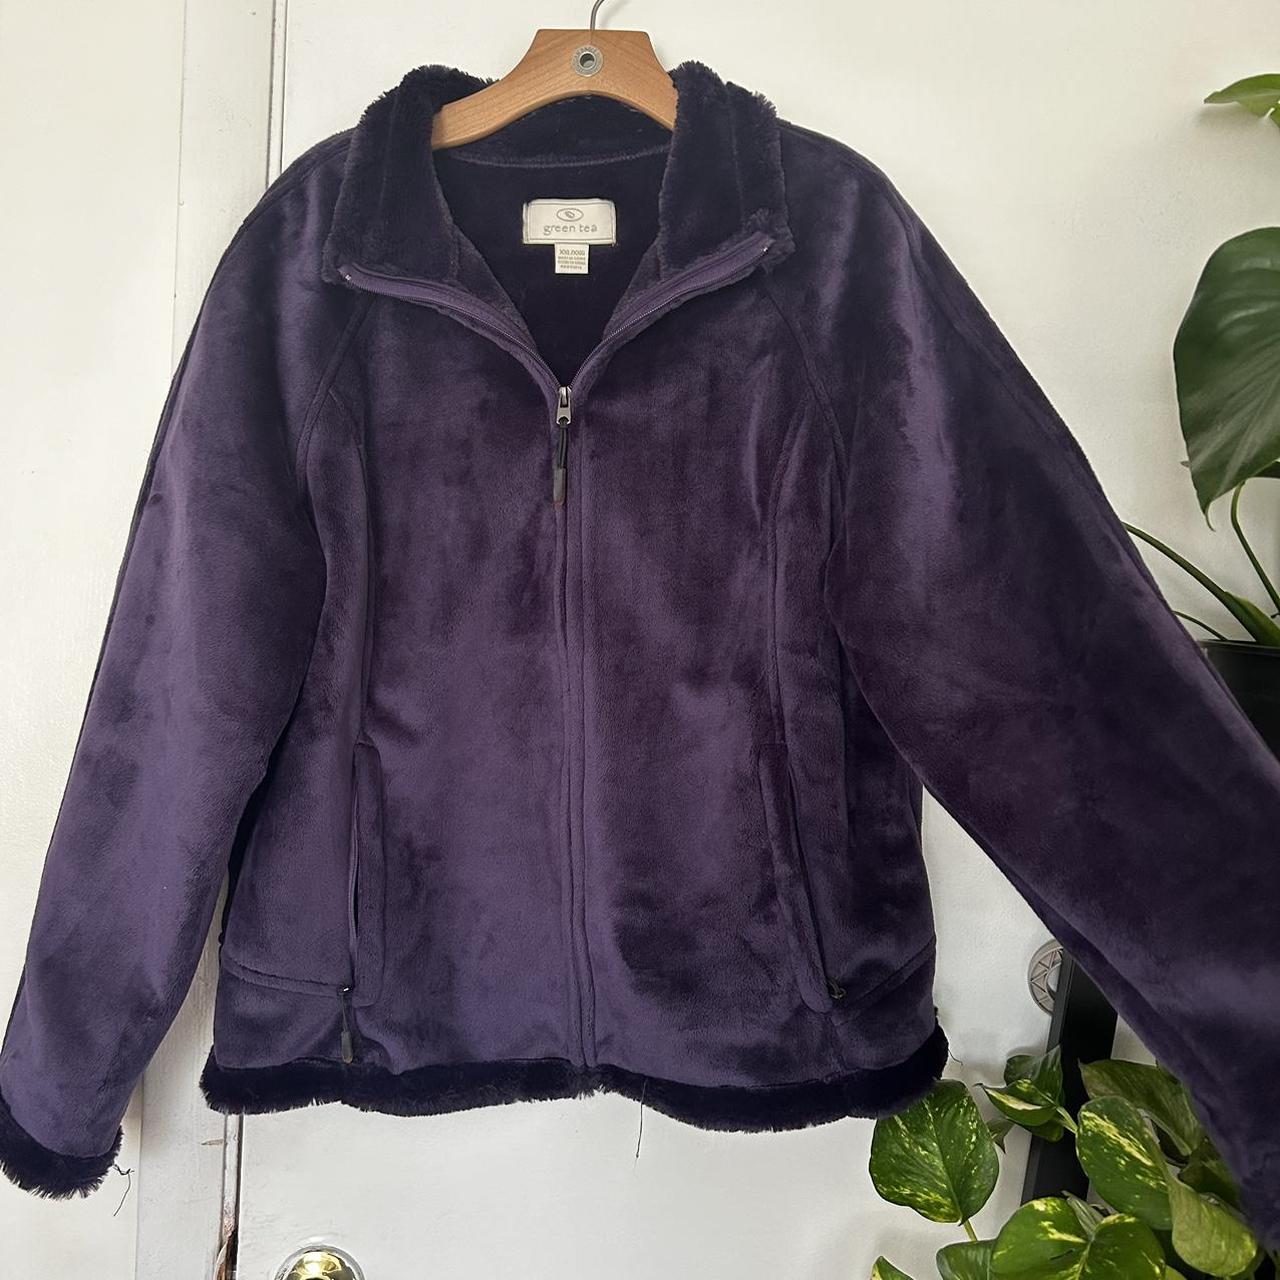 Super thick/warm dark purple jacket! Very pretty and... - Depop